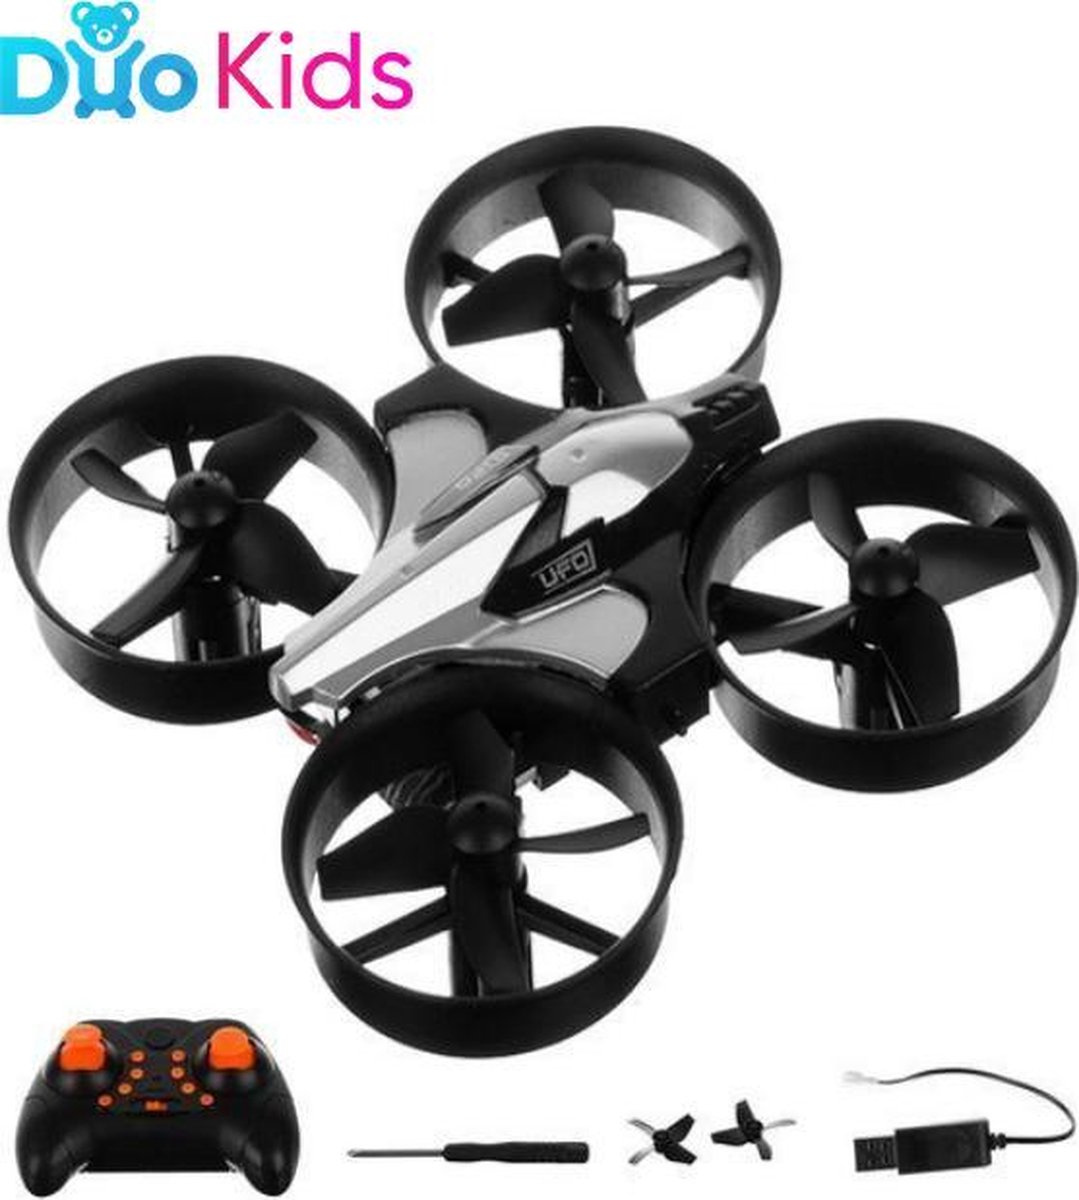 Duo Kids - Mini-drone met RC acrobatiekmodus - Zwart Drone met afstandsbediening met LED Verlichting